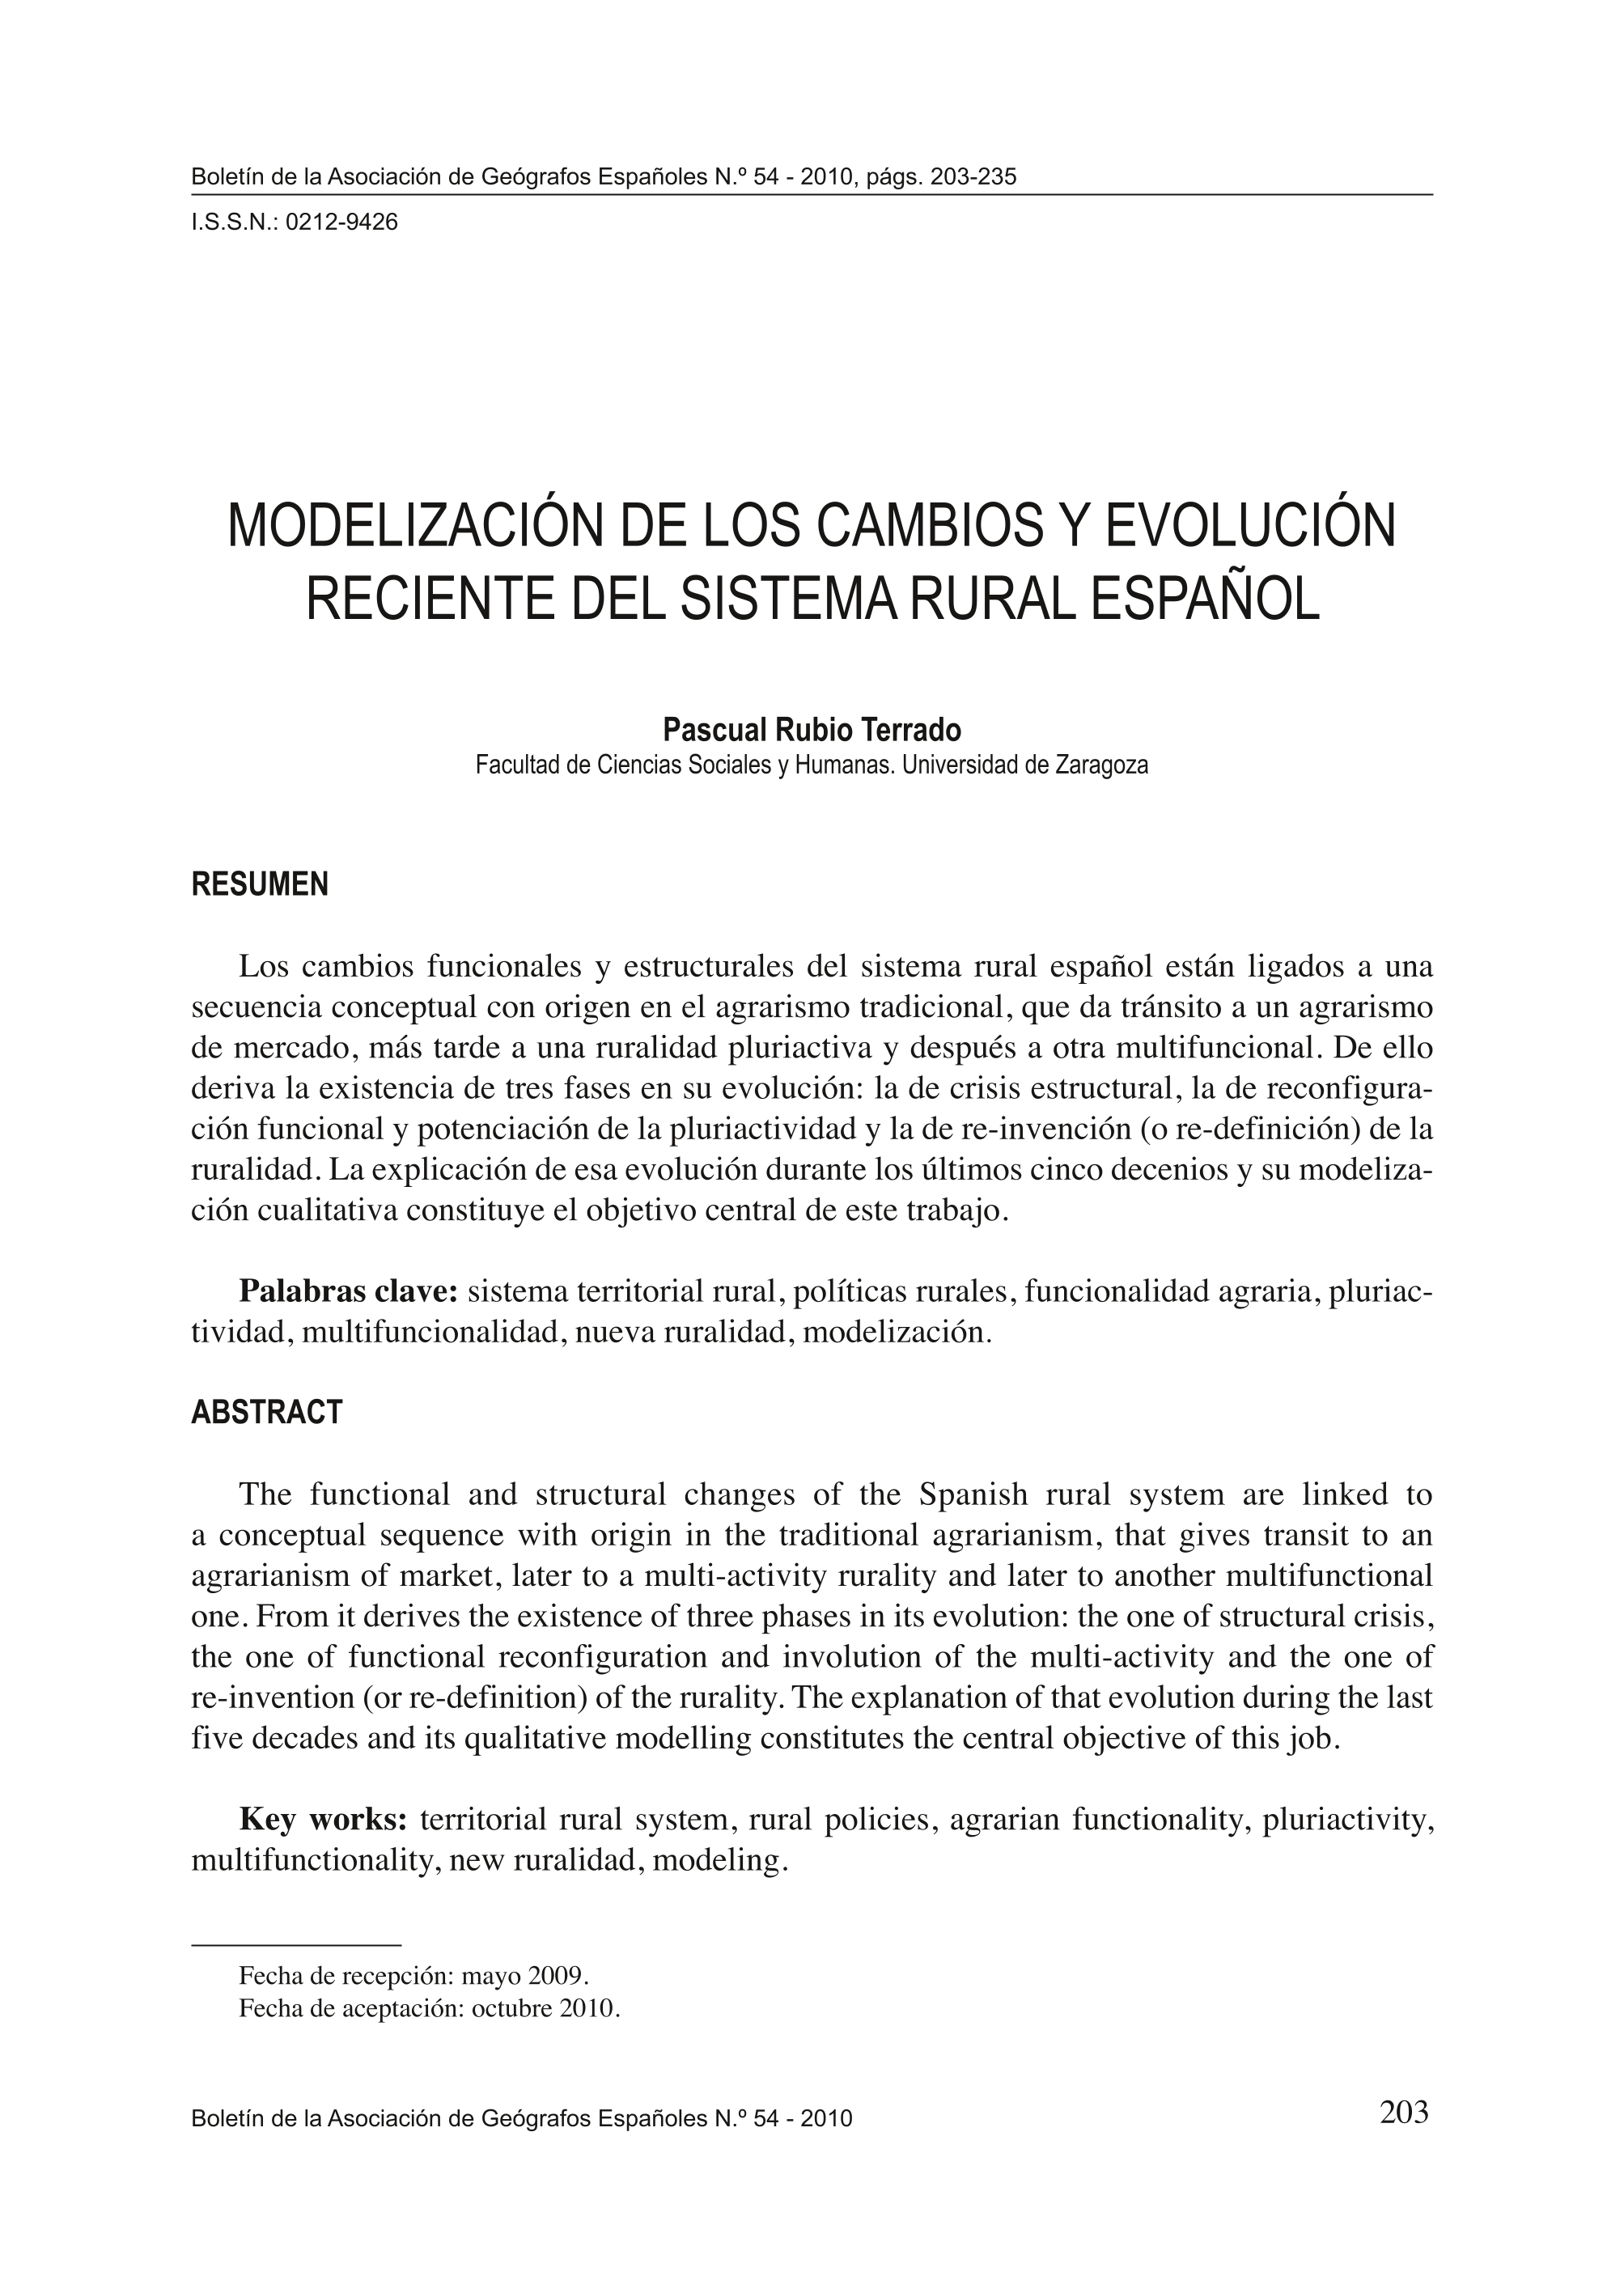 Modelización de los cambios y evolución reciente del sistema rural español